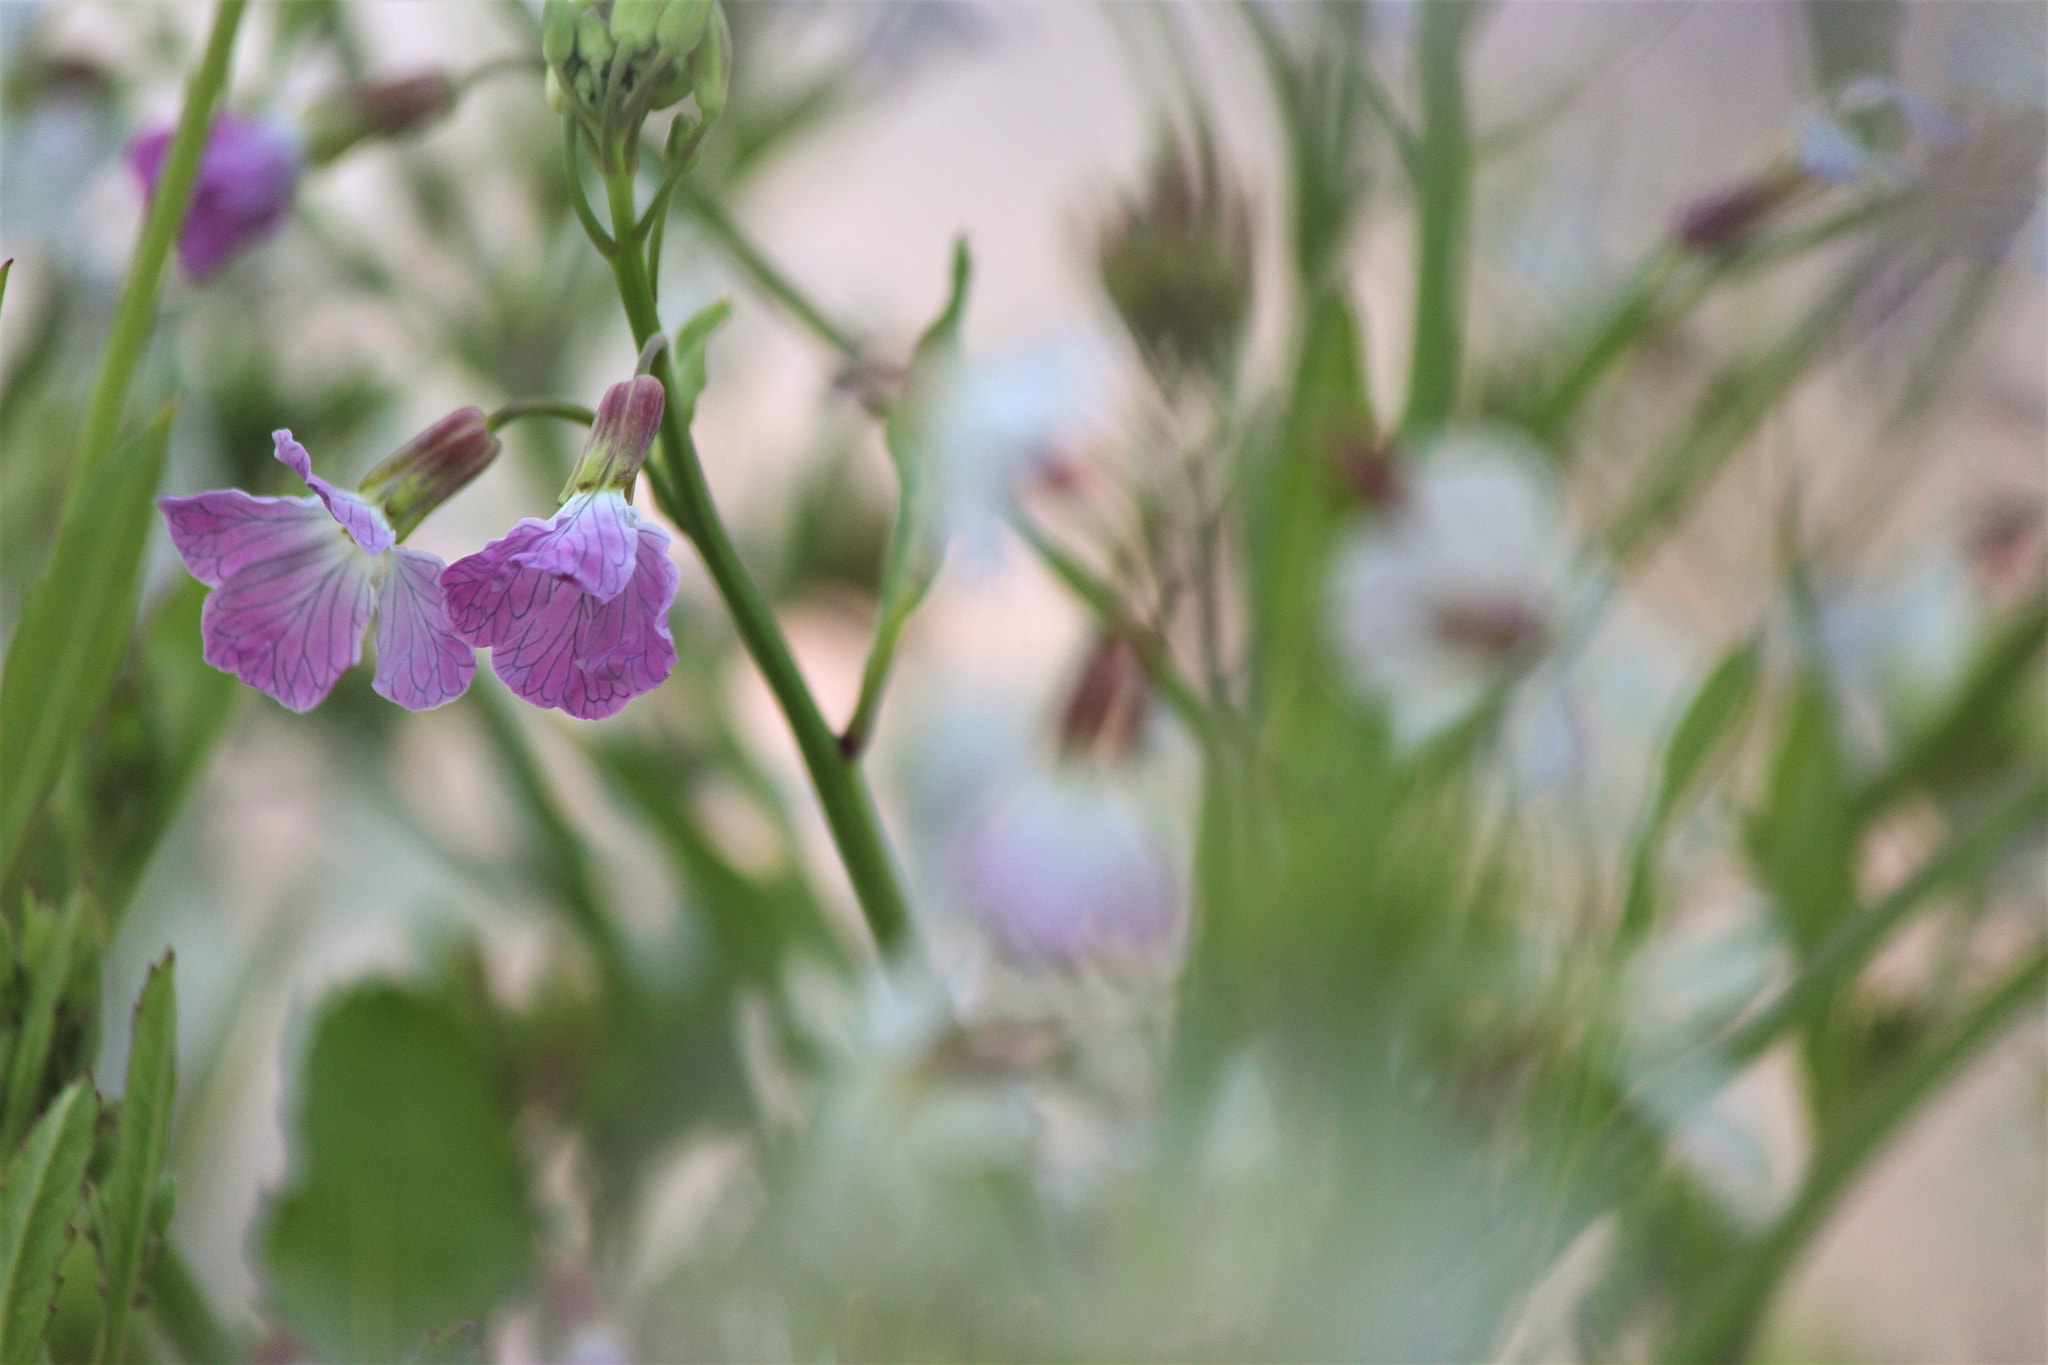 Canon EOS 60D sample photo. Flower garden photography